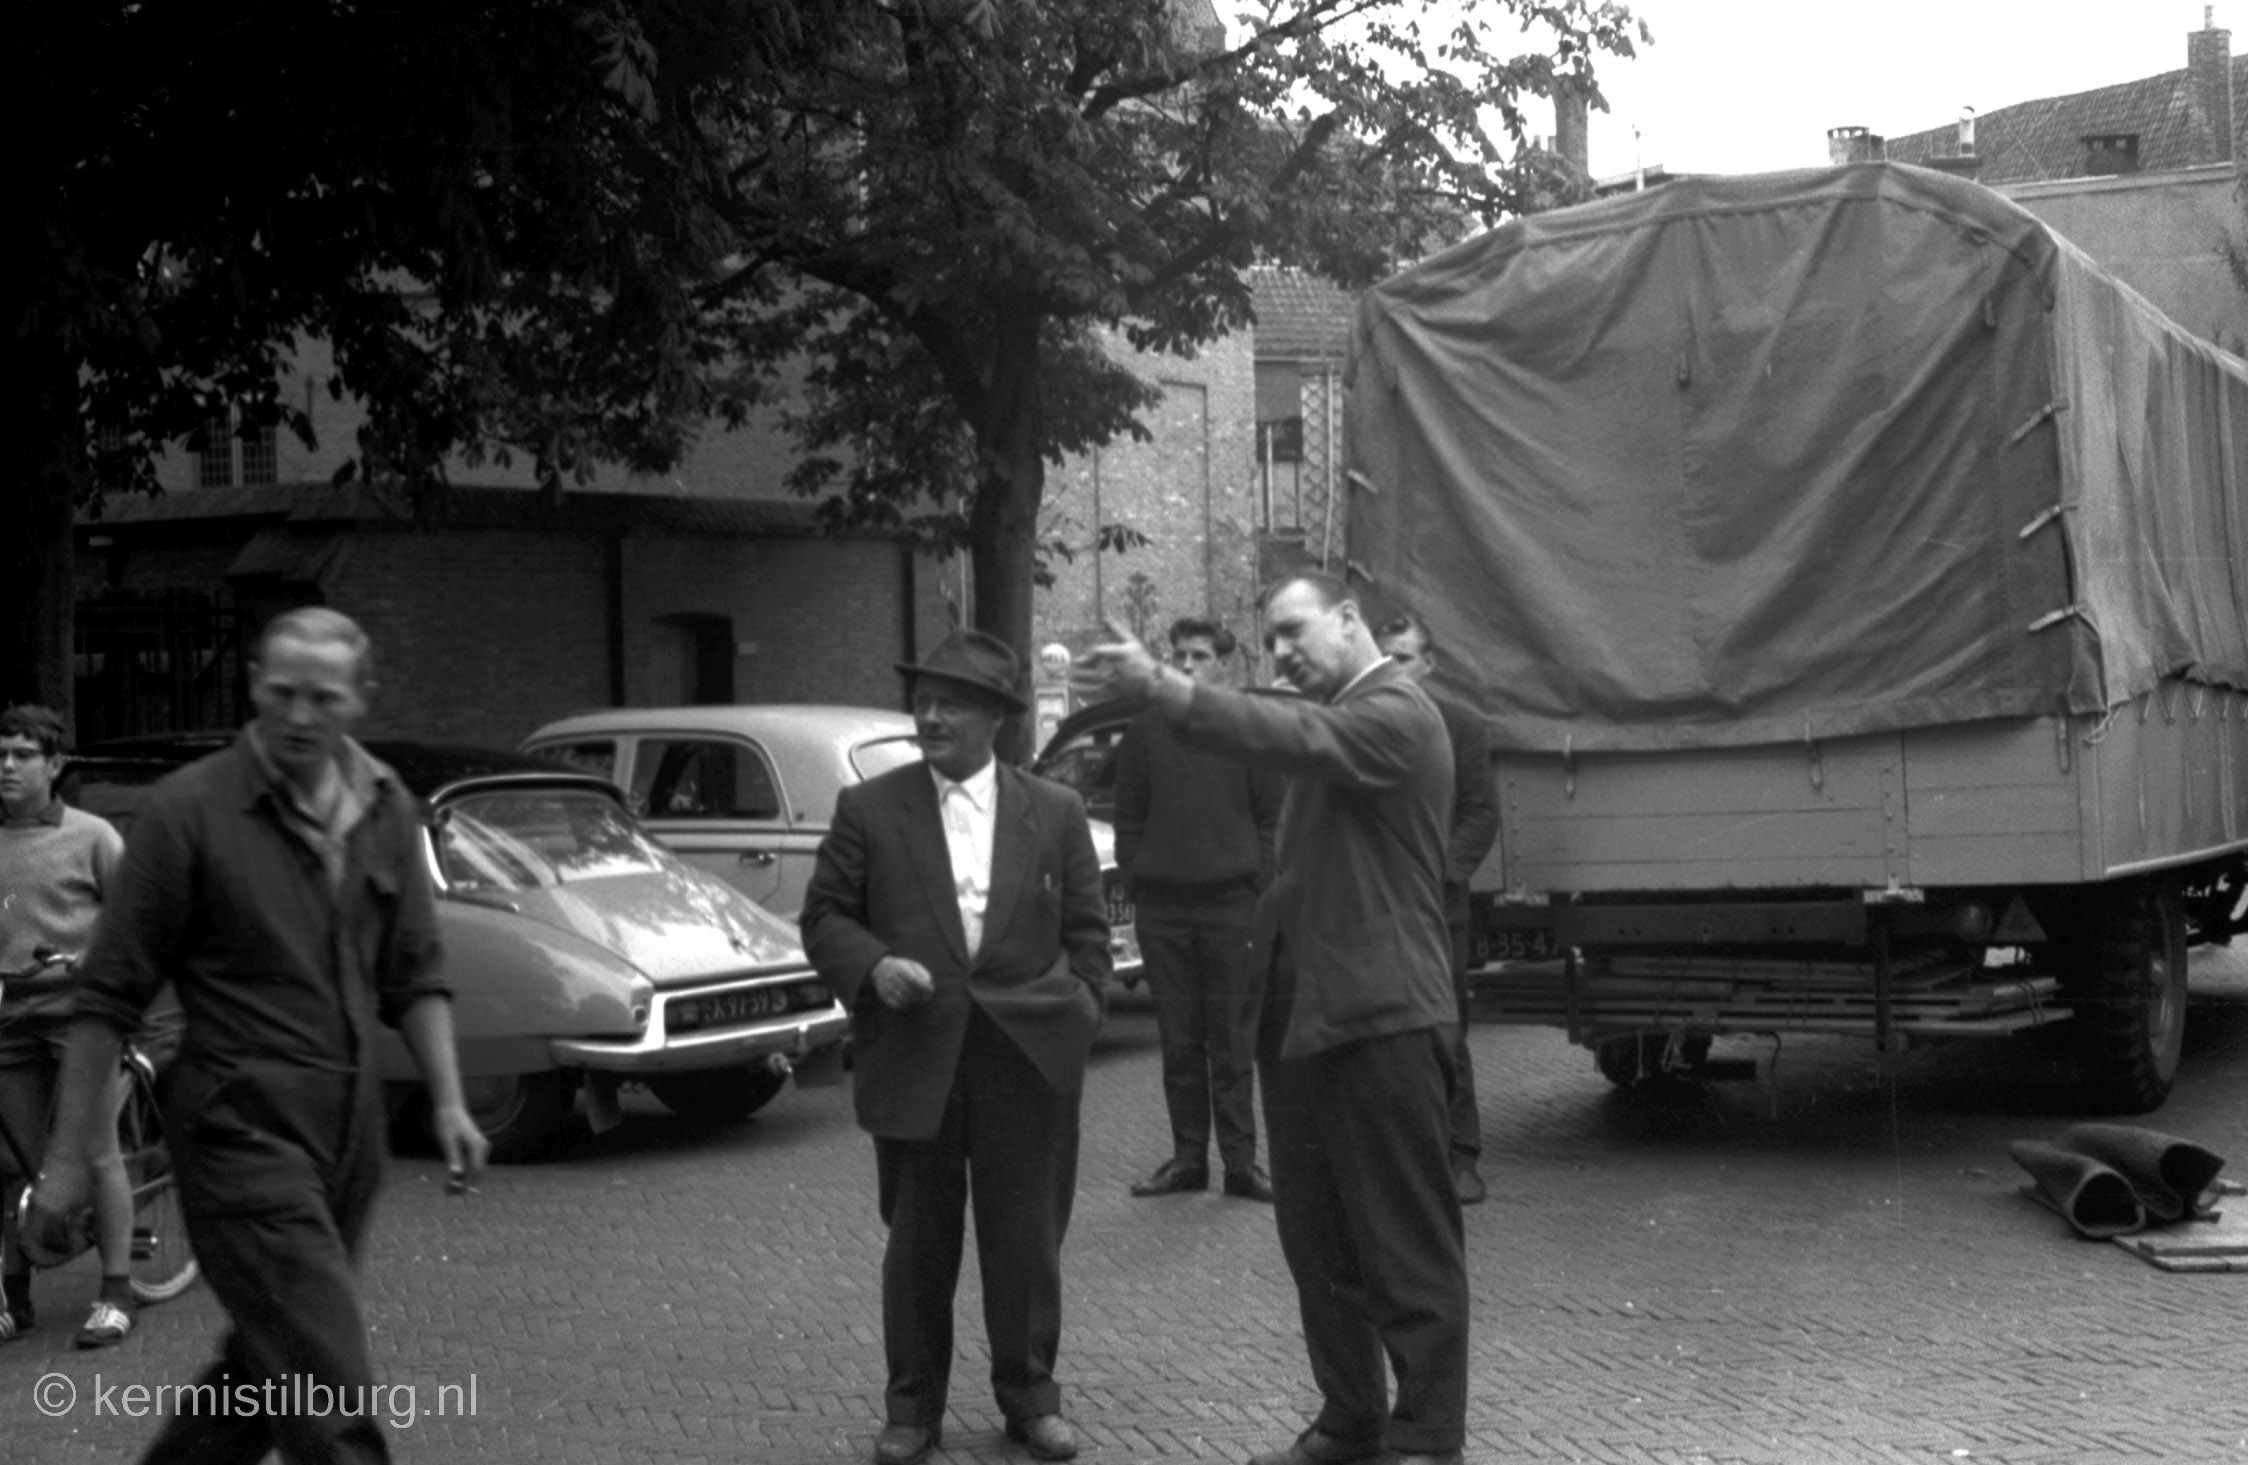 1961, Kermis, Tilburg, Tilburgse kermis, skc